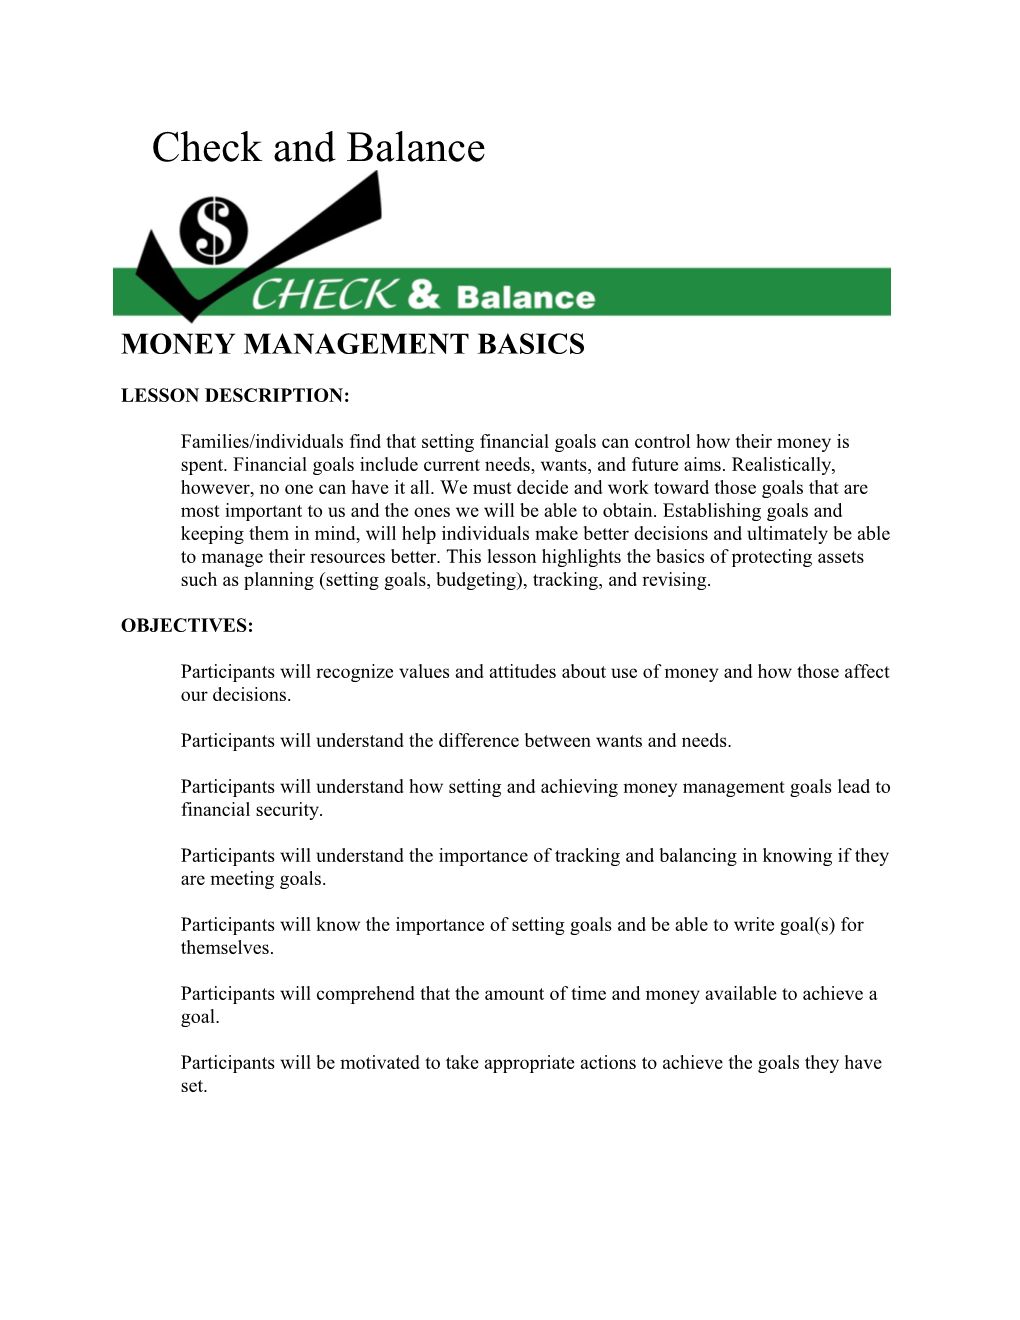 Money Management Basics